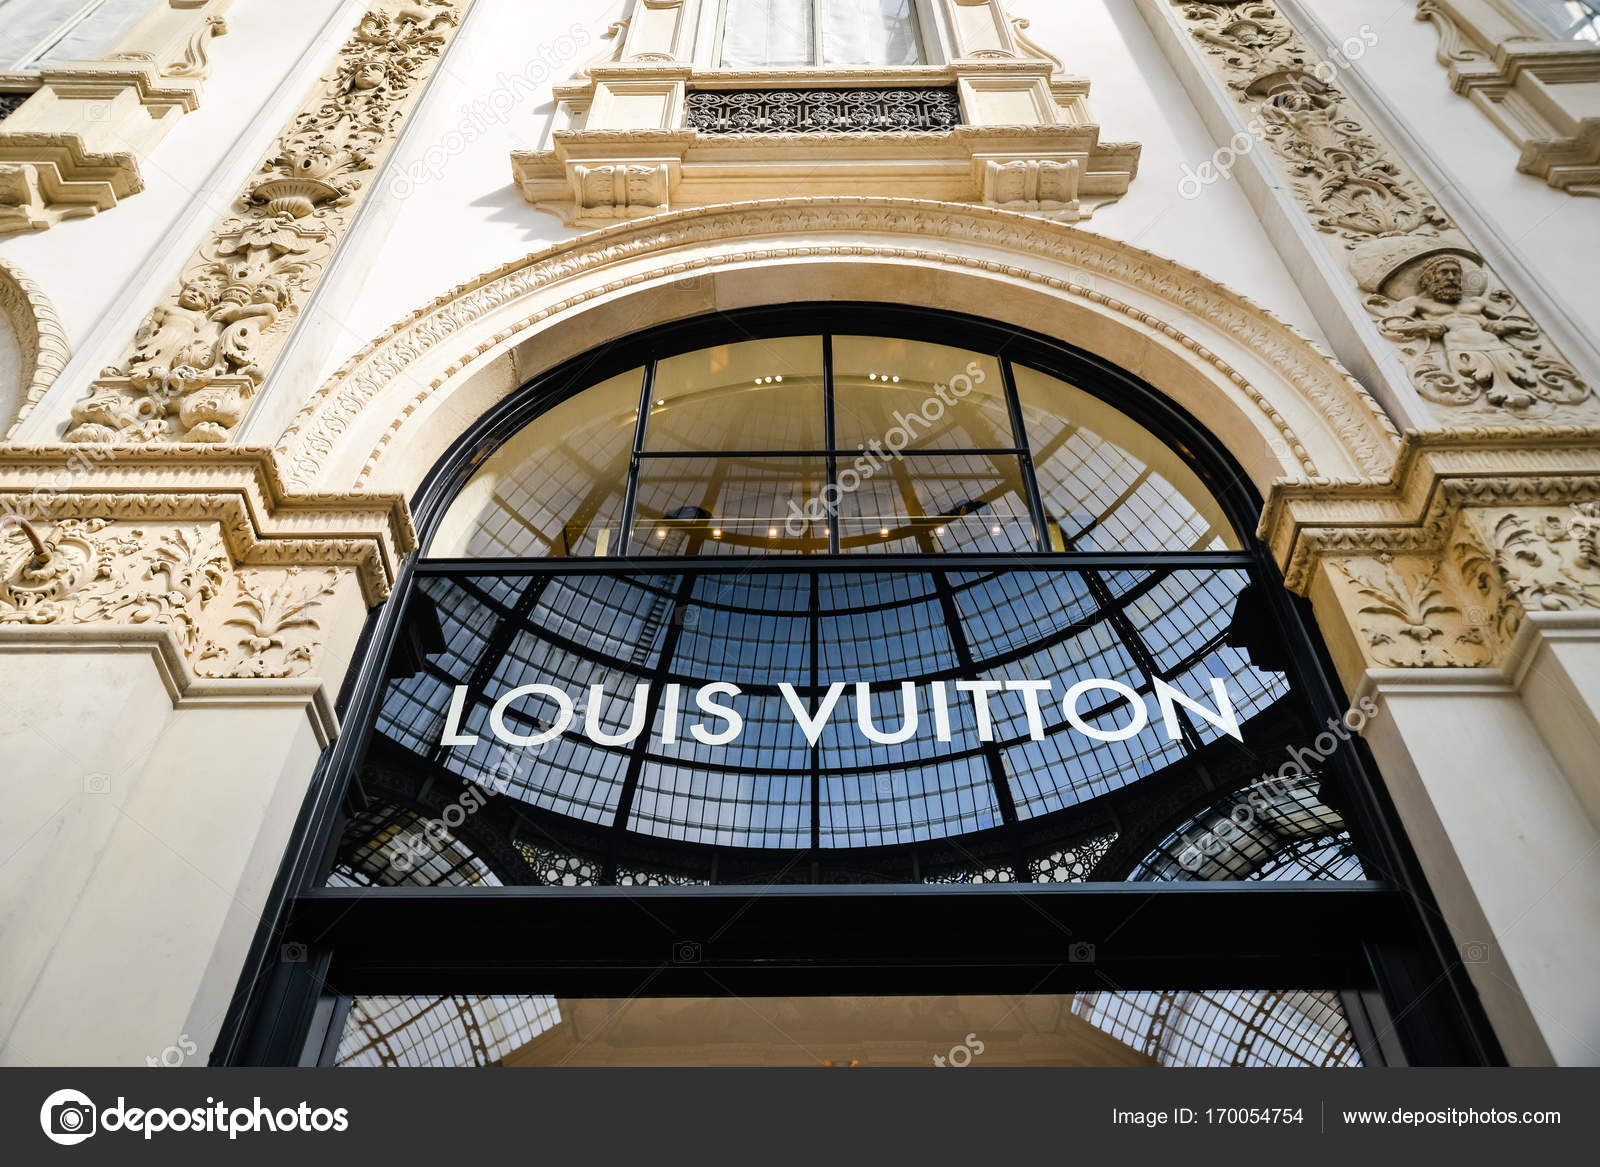 Louis Vuitton store in Galleria Vittorio Emanuele in Milan, Italy